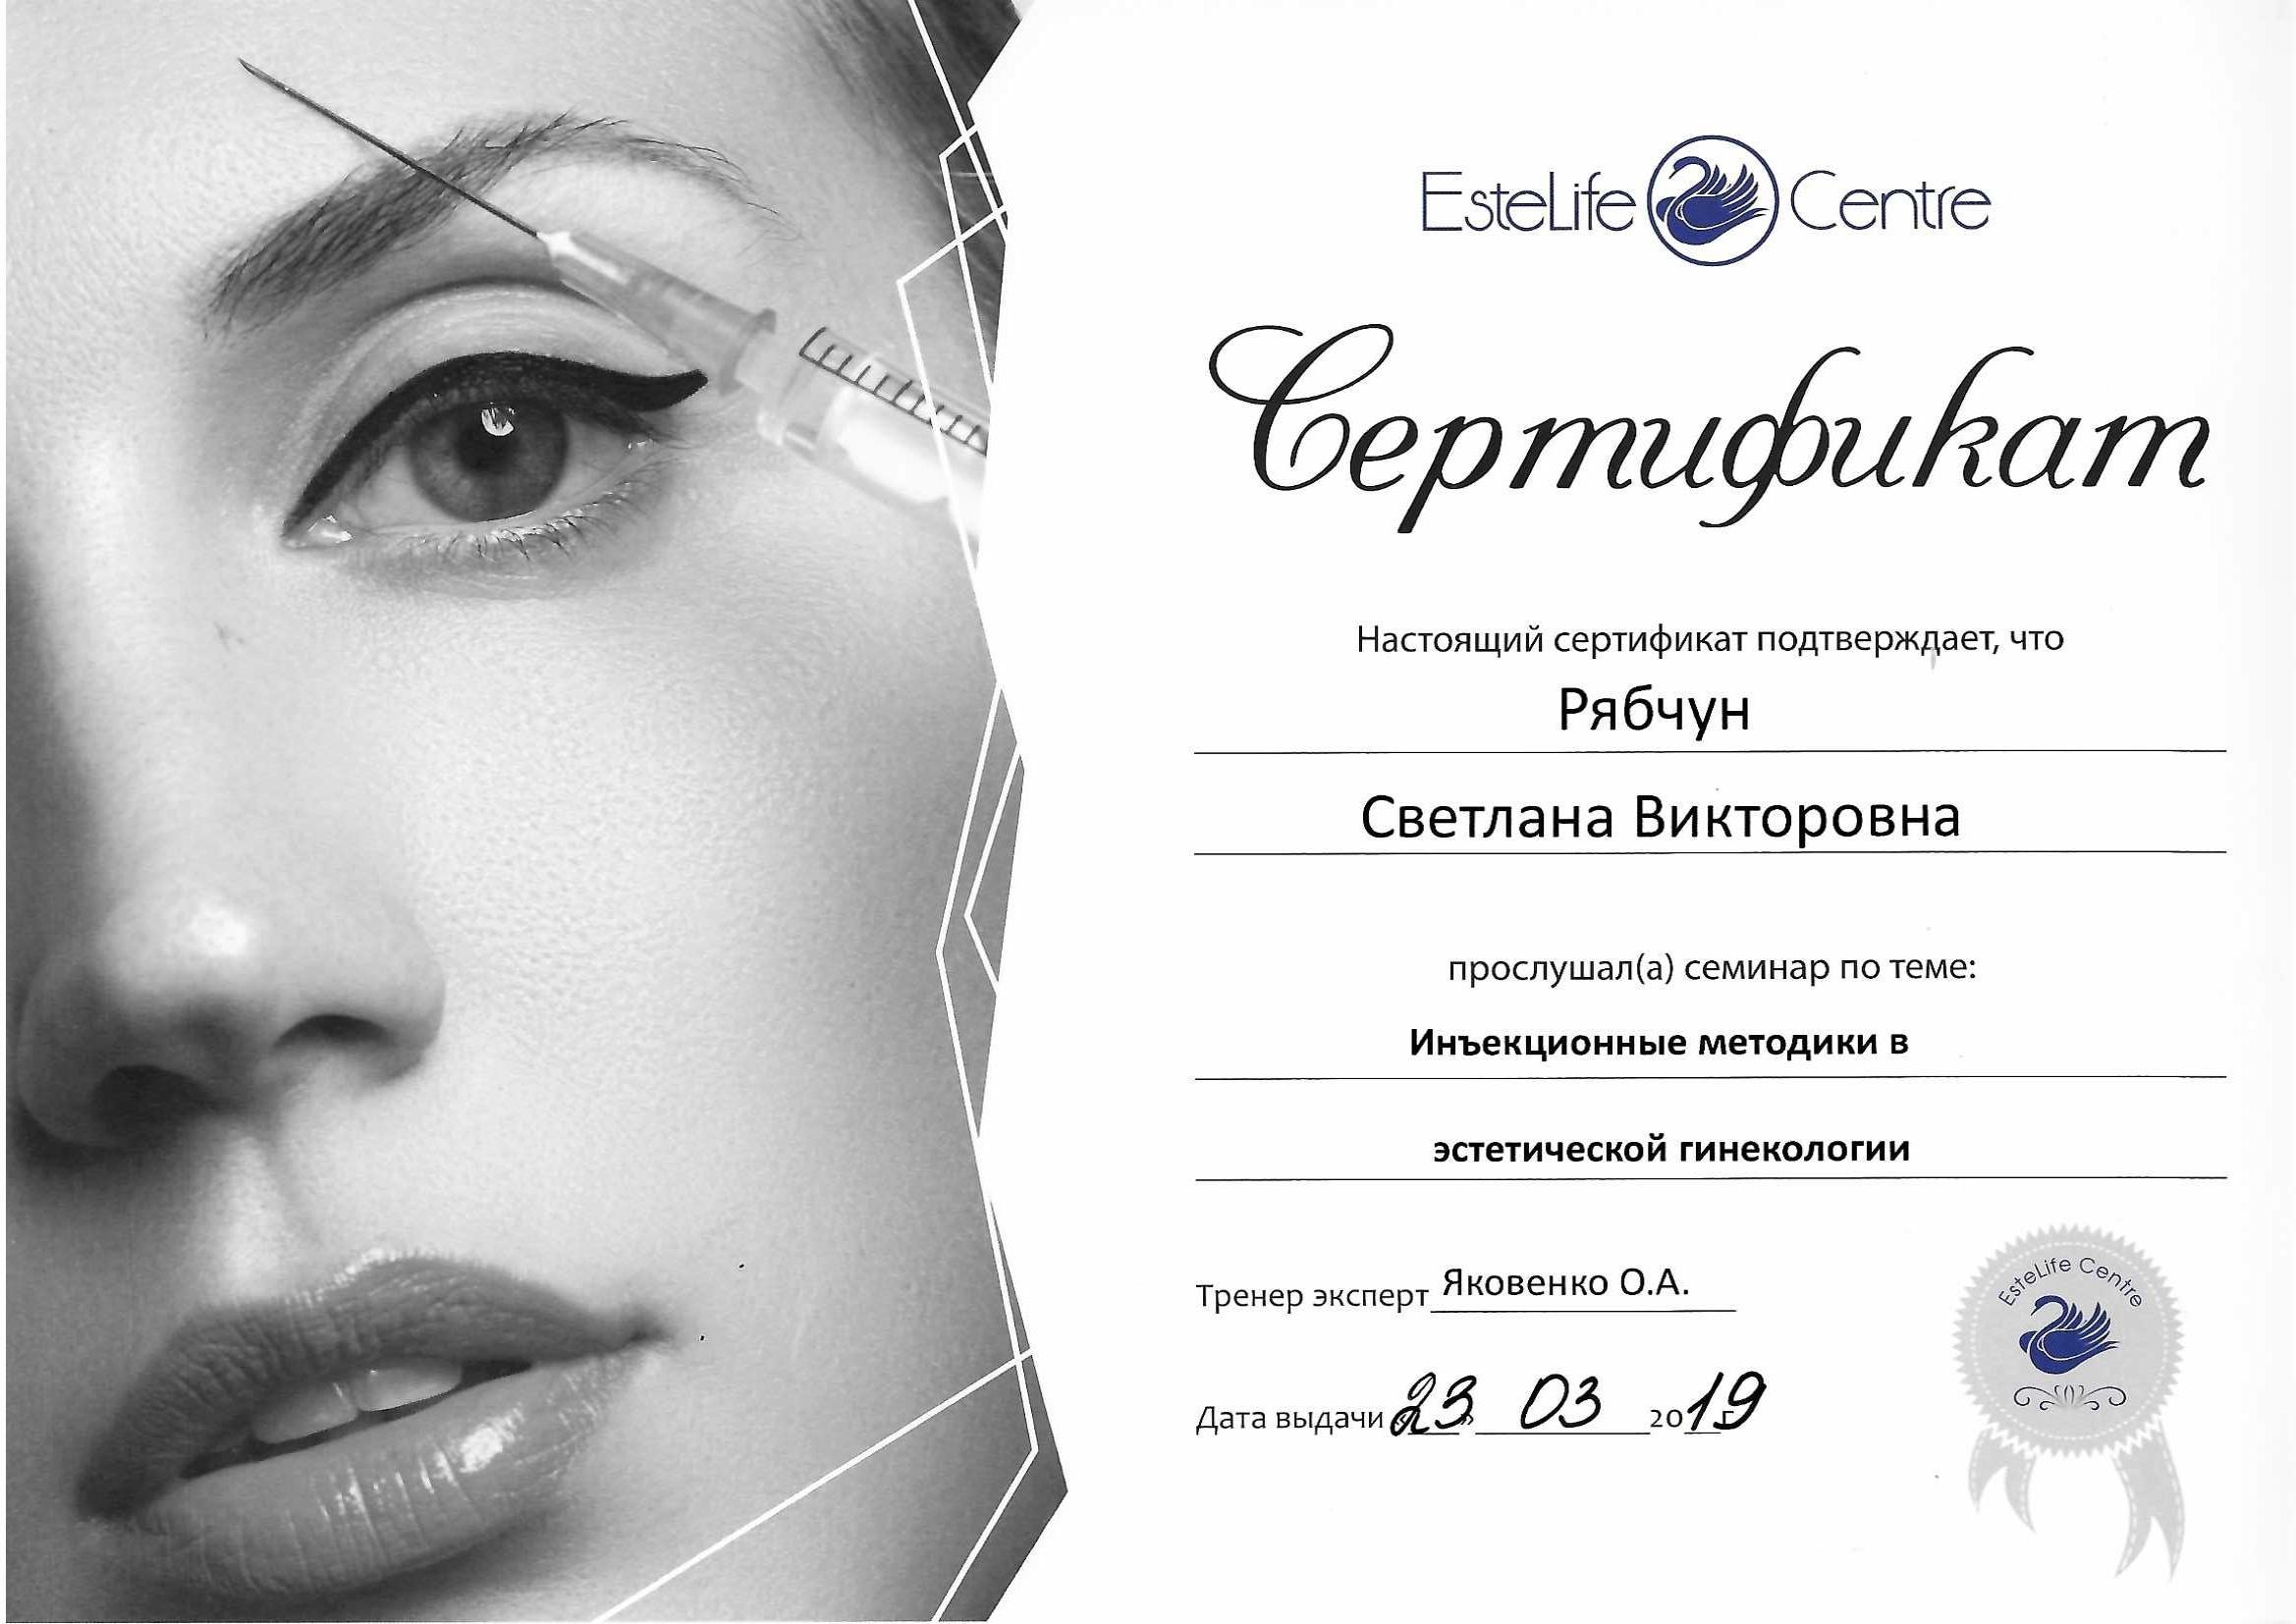 Сертификат врача Рябчун Светлана Викторовна фото 0